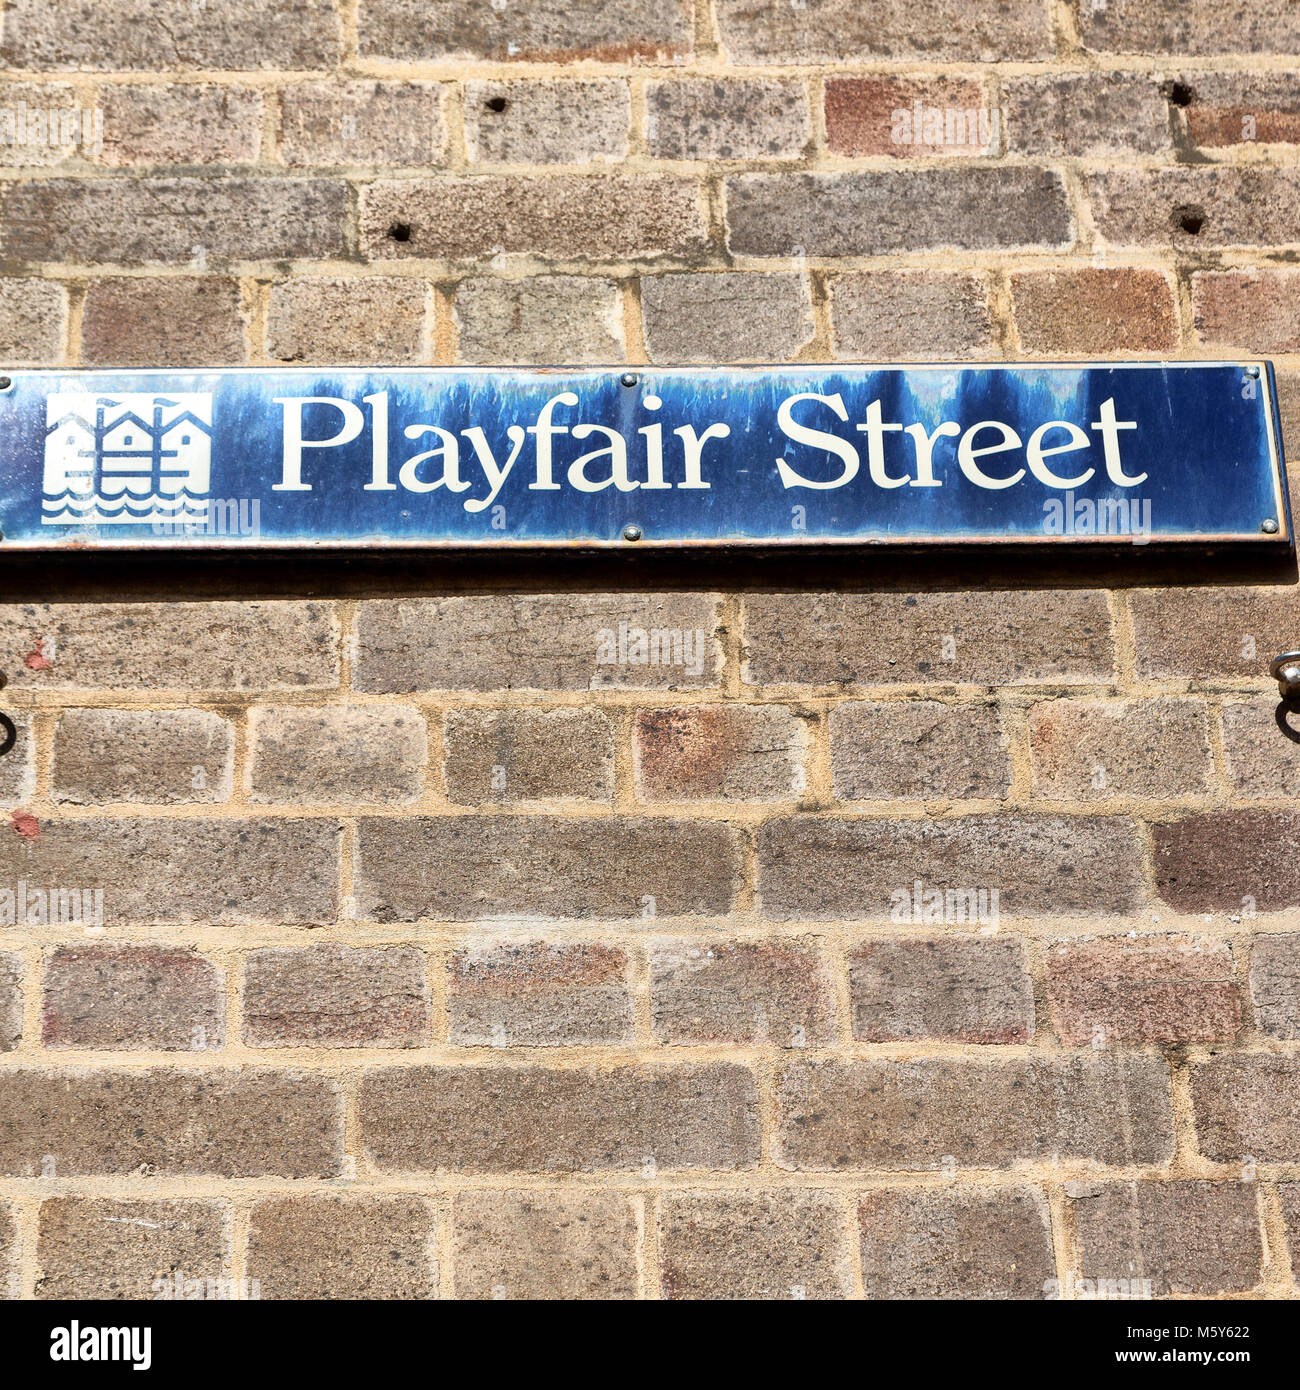 Sidney en Australie le signe de playfair street dans le mur Banque D'Images